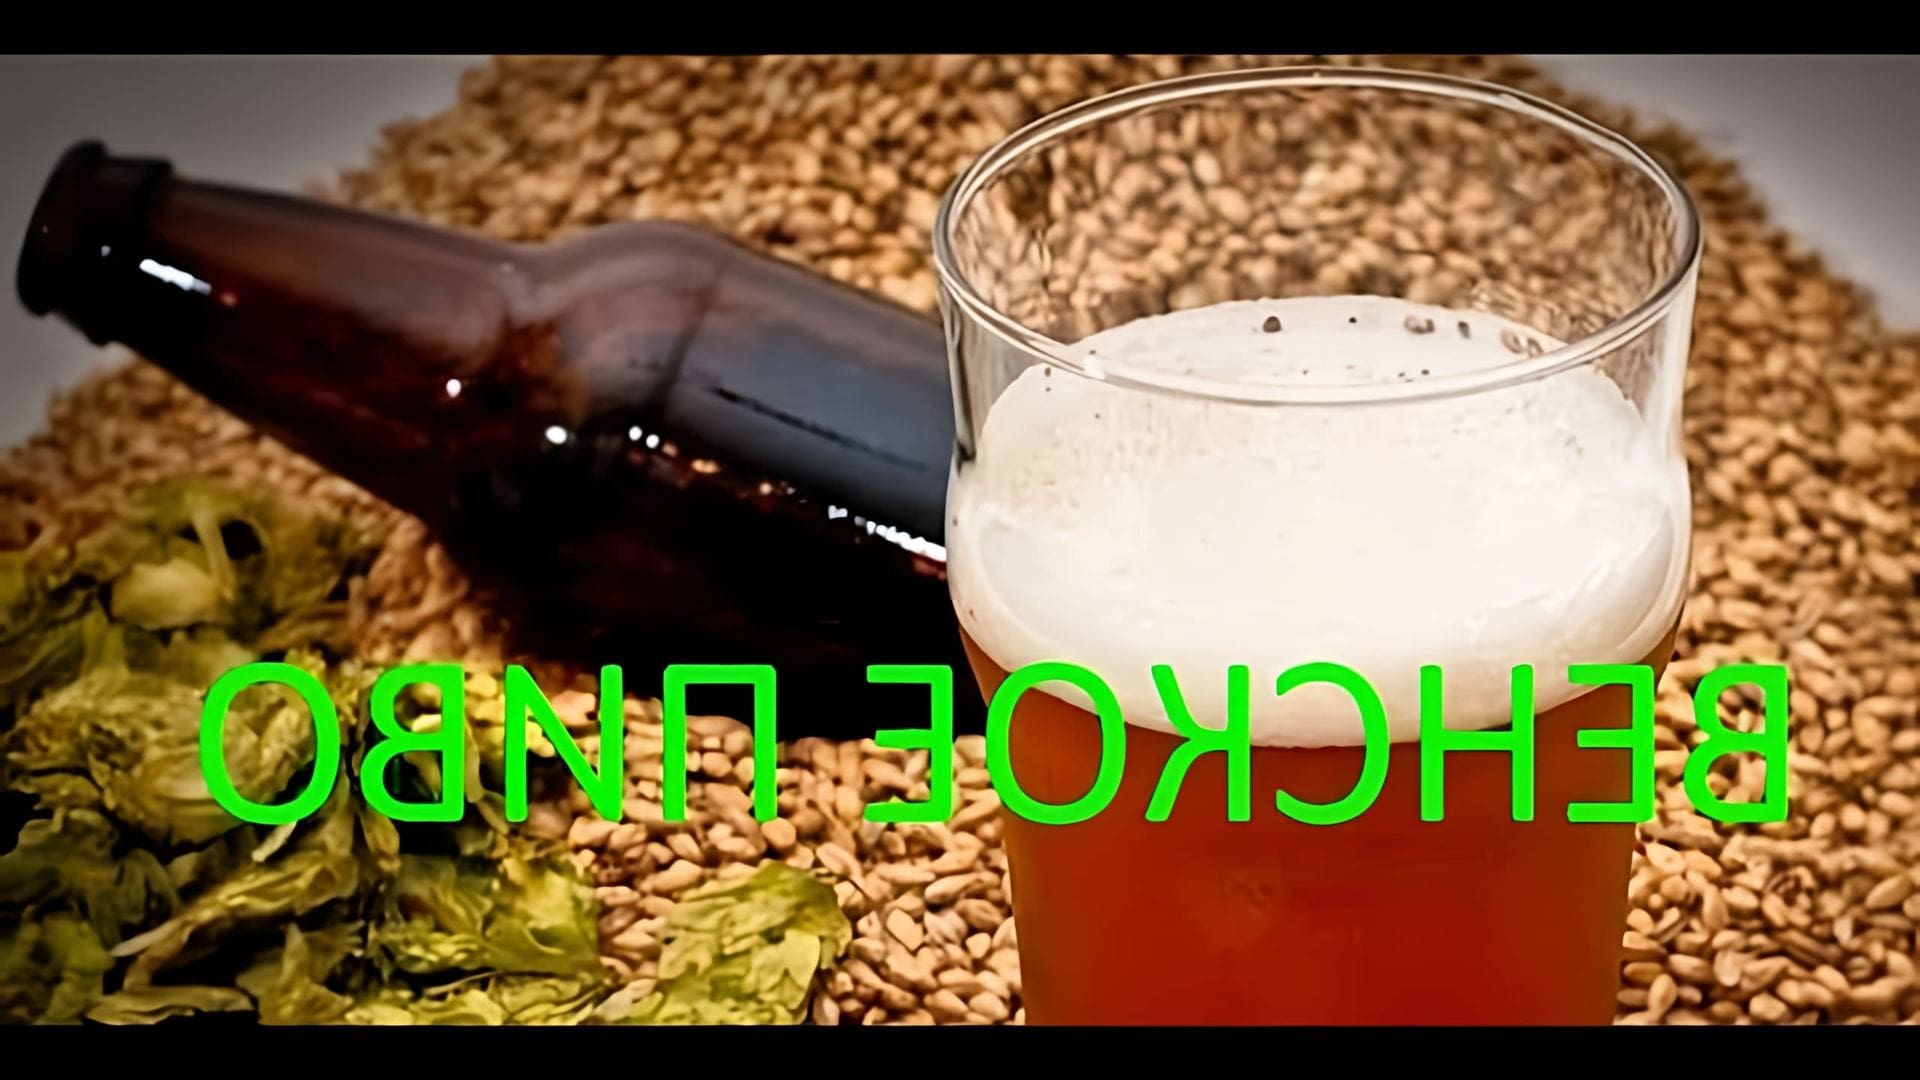 В данном видео демонстрируется процесс приготовления венского пива (эля) в домашних условиях